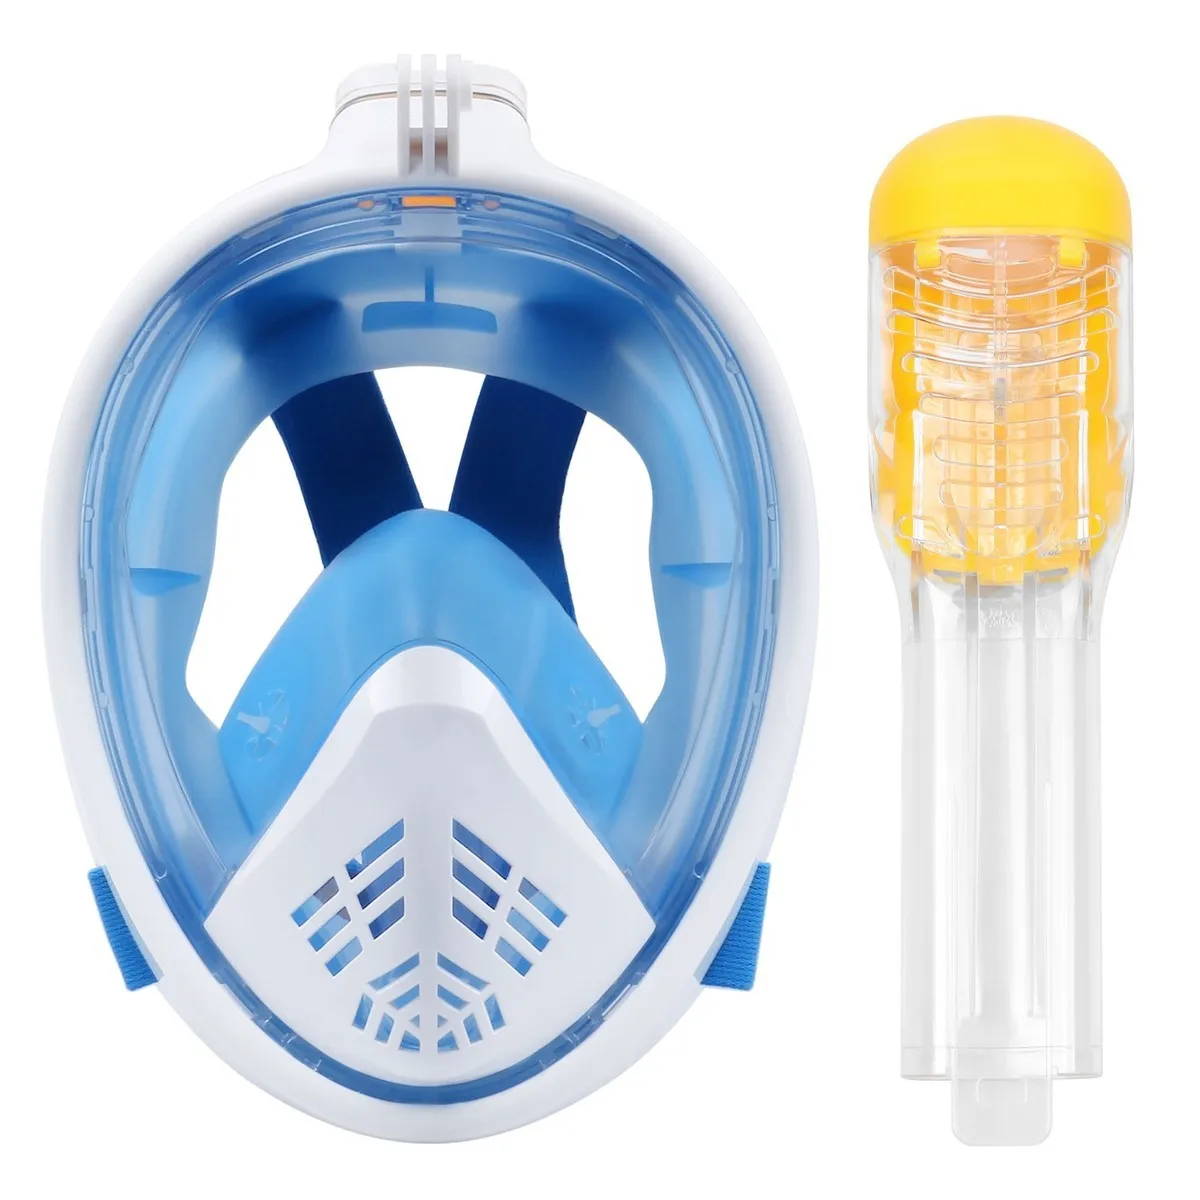 SMACO новая маска для подводного плавания маска для подводного плавания подводное плавание самбо оборудование защита от солнца УФ